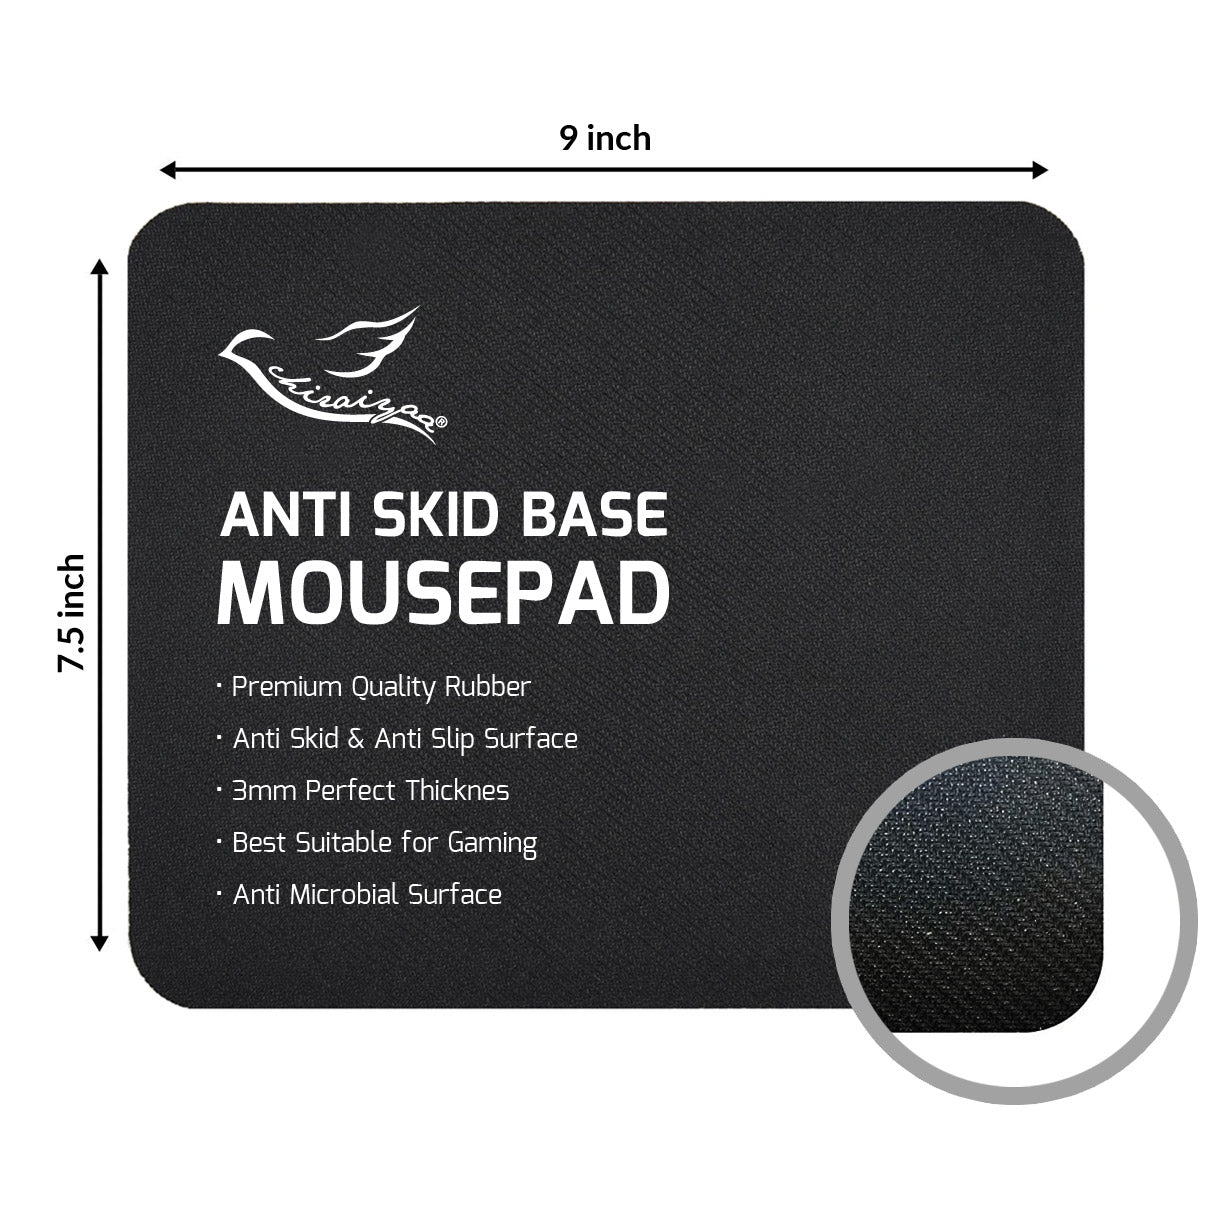 Success Quotes Designer Printed Premium Mouse pad (9 in x 7.5 in)